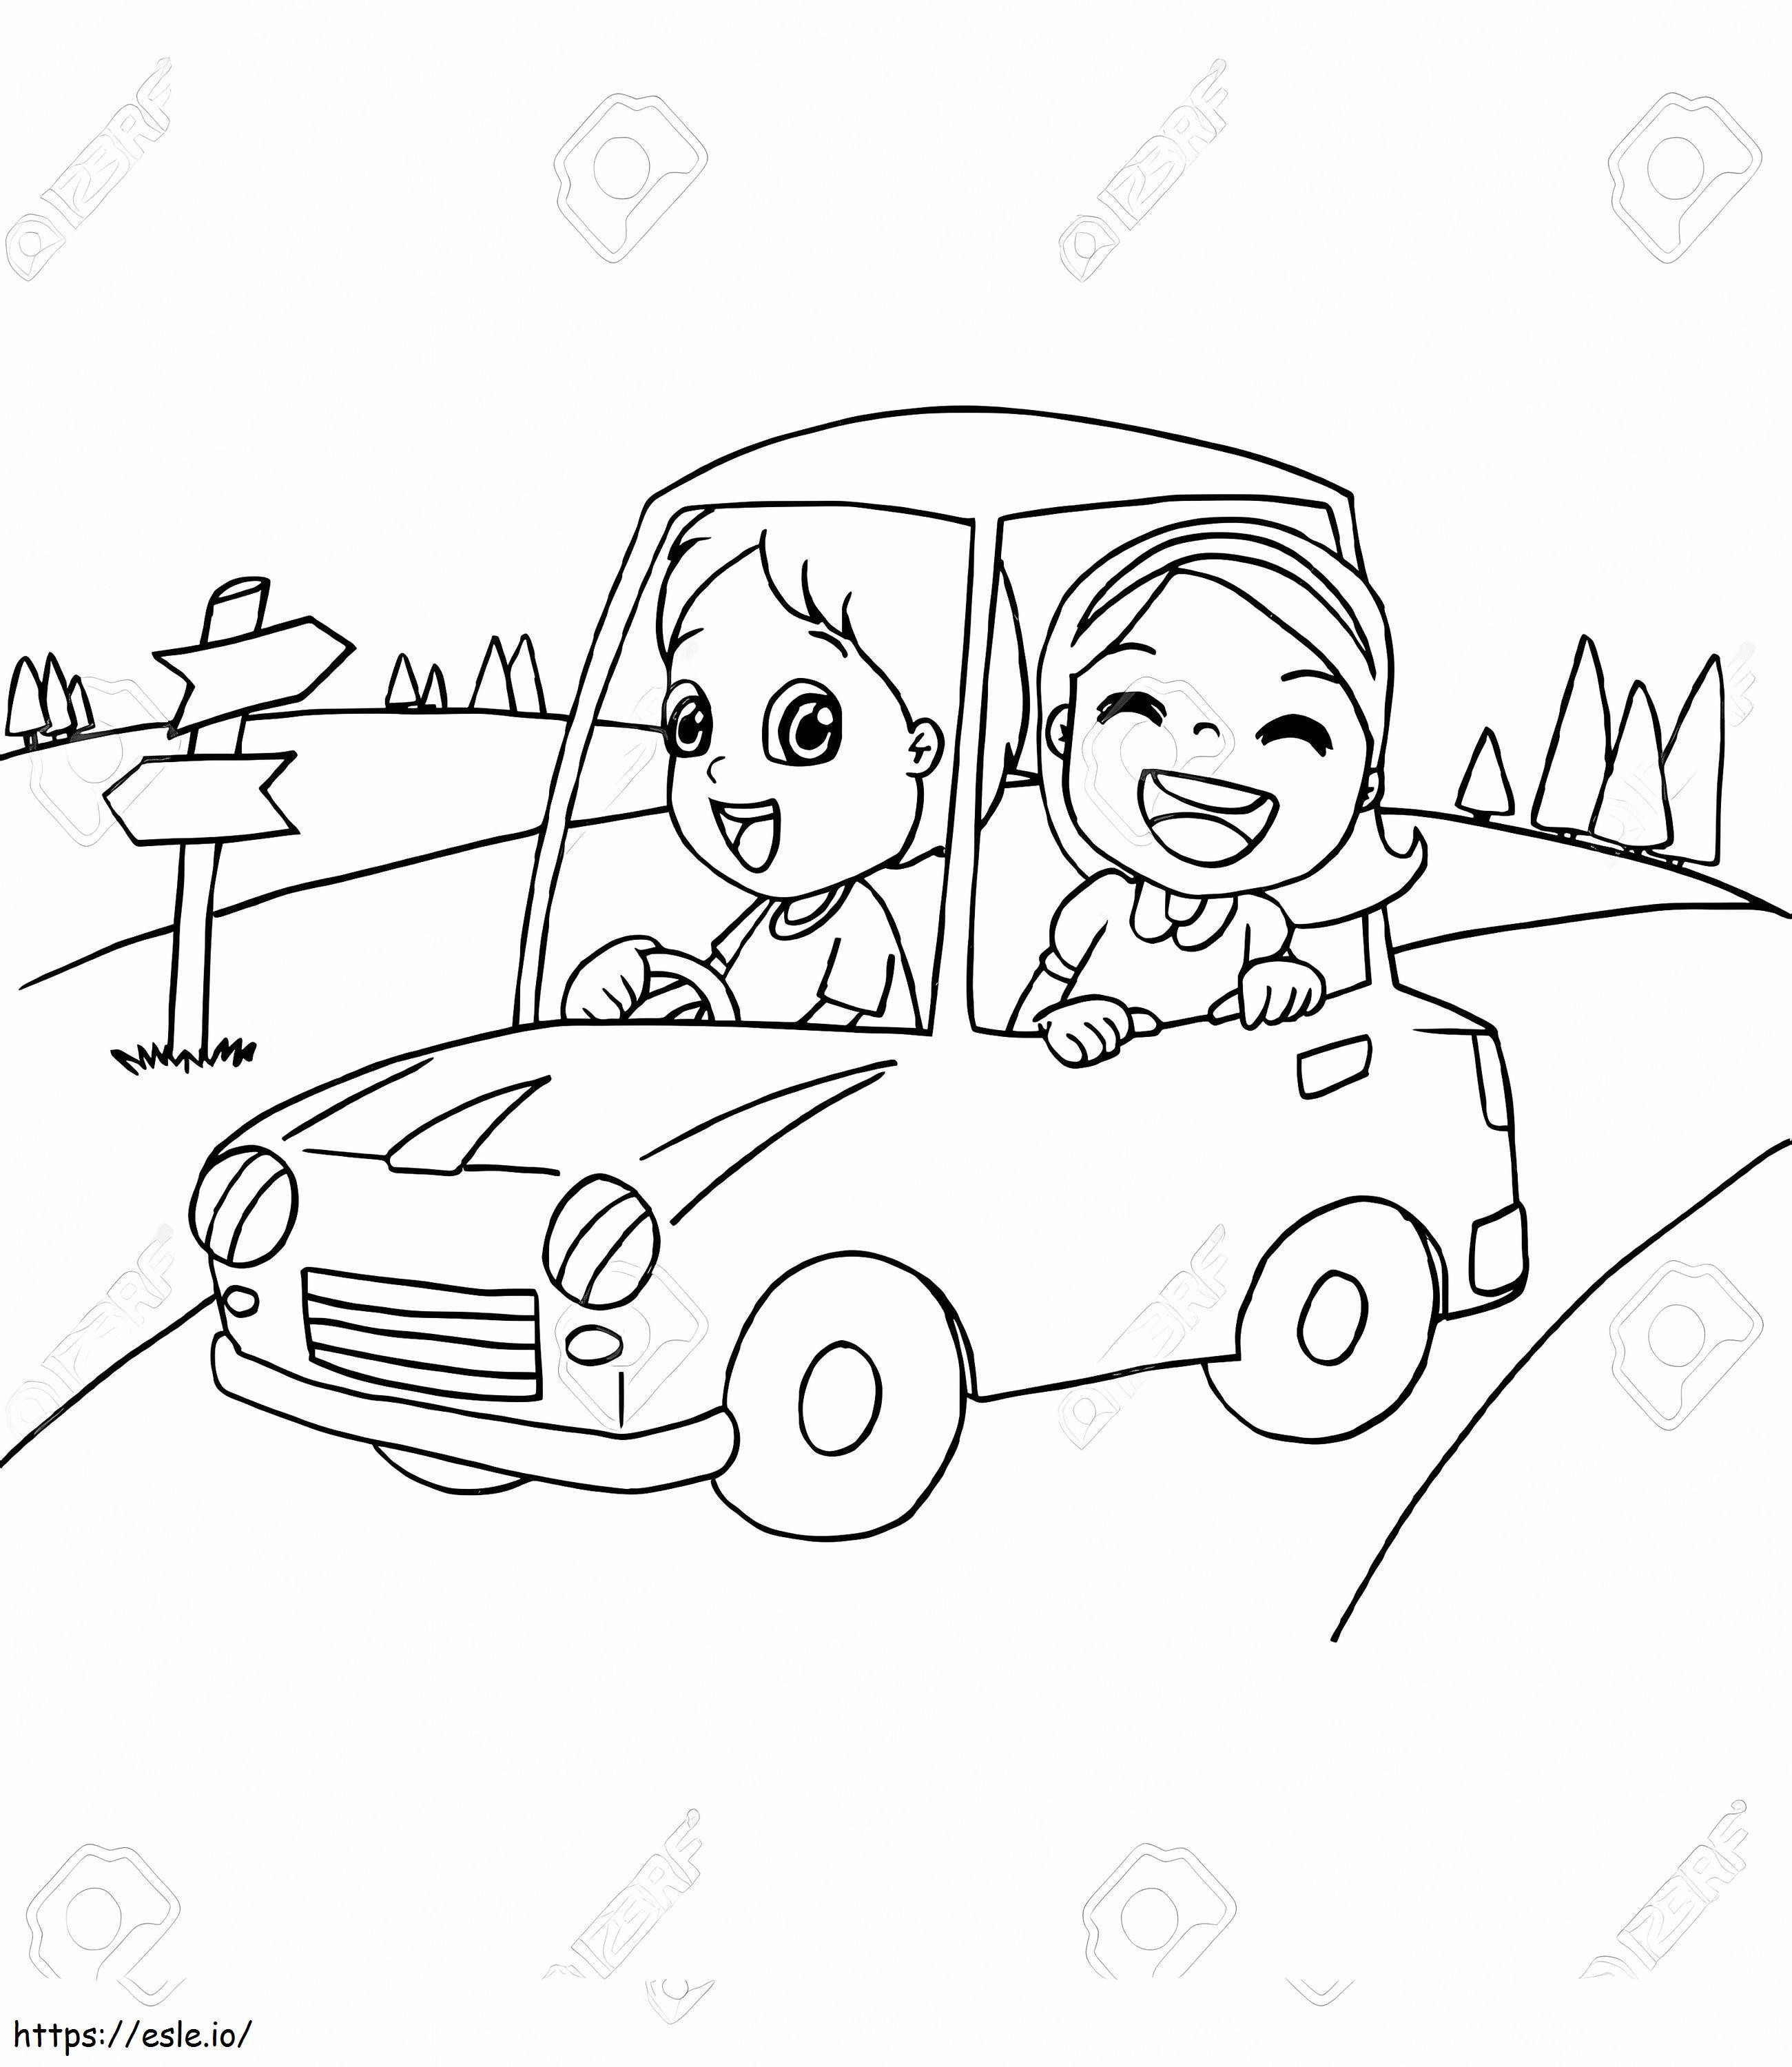 83072559 Afbeelding van kleine jongen en vriend die een speelgoedauto bestuurt Vector kleurplaat kleurplaat